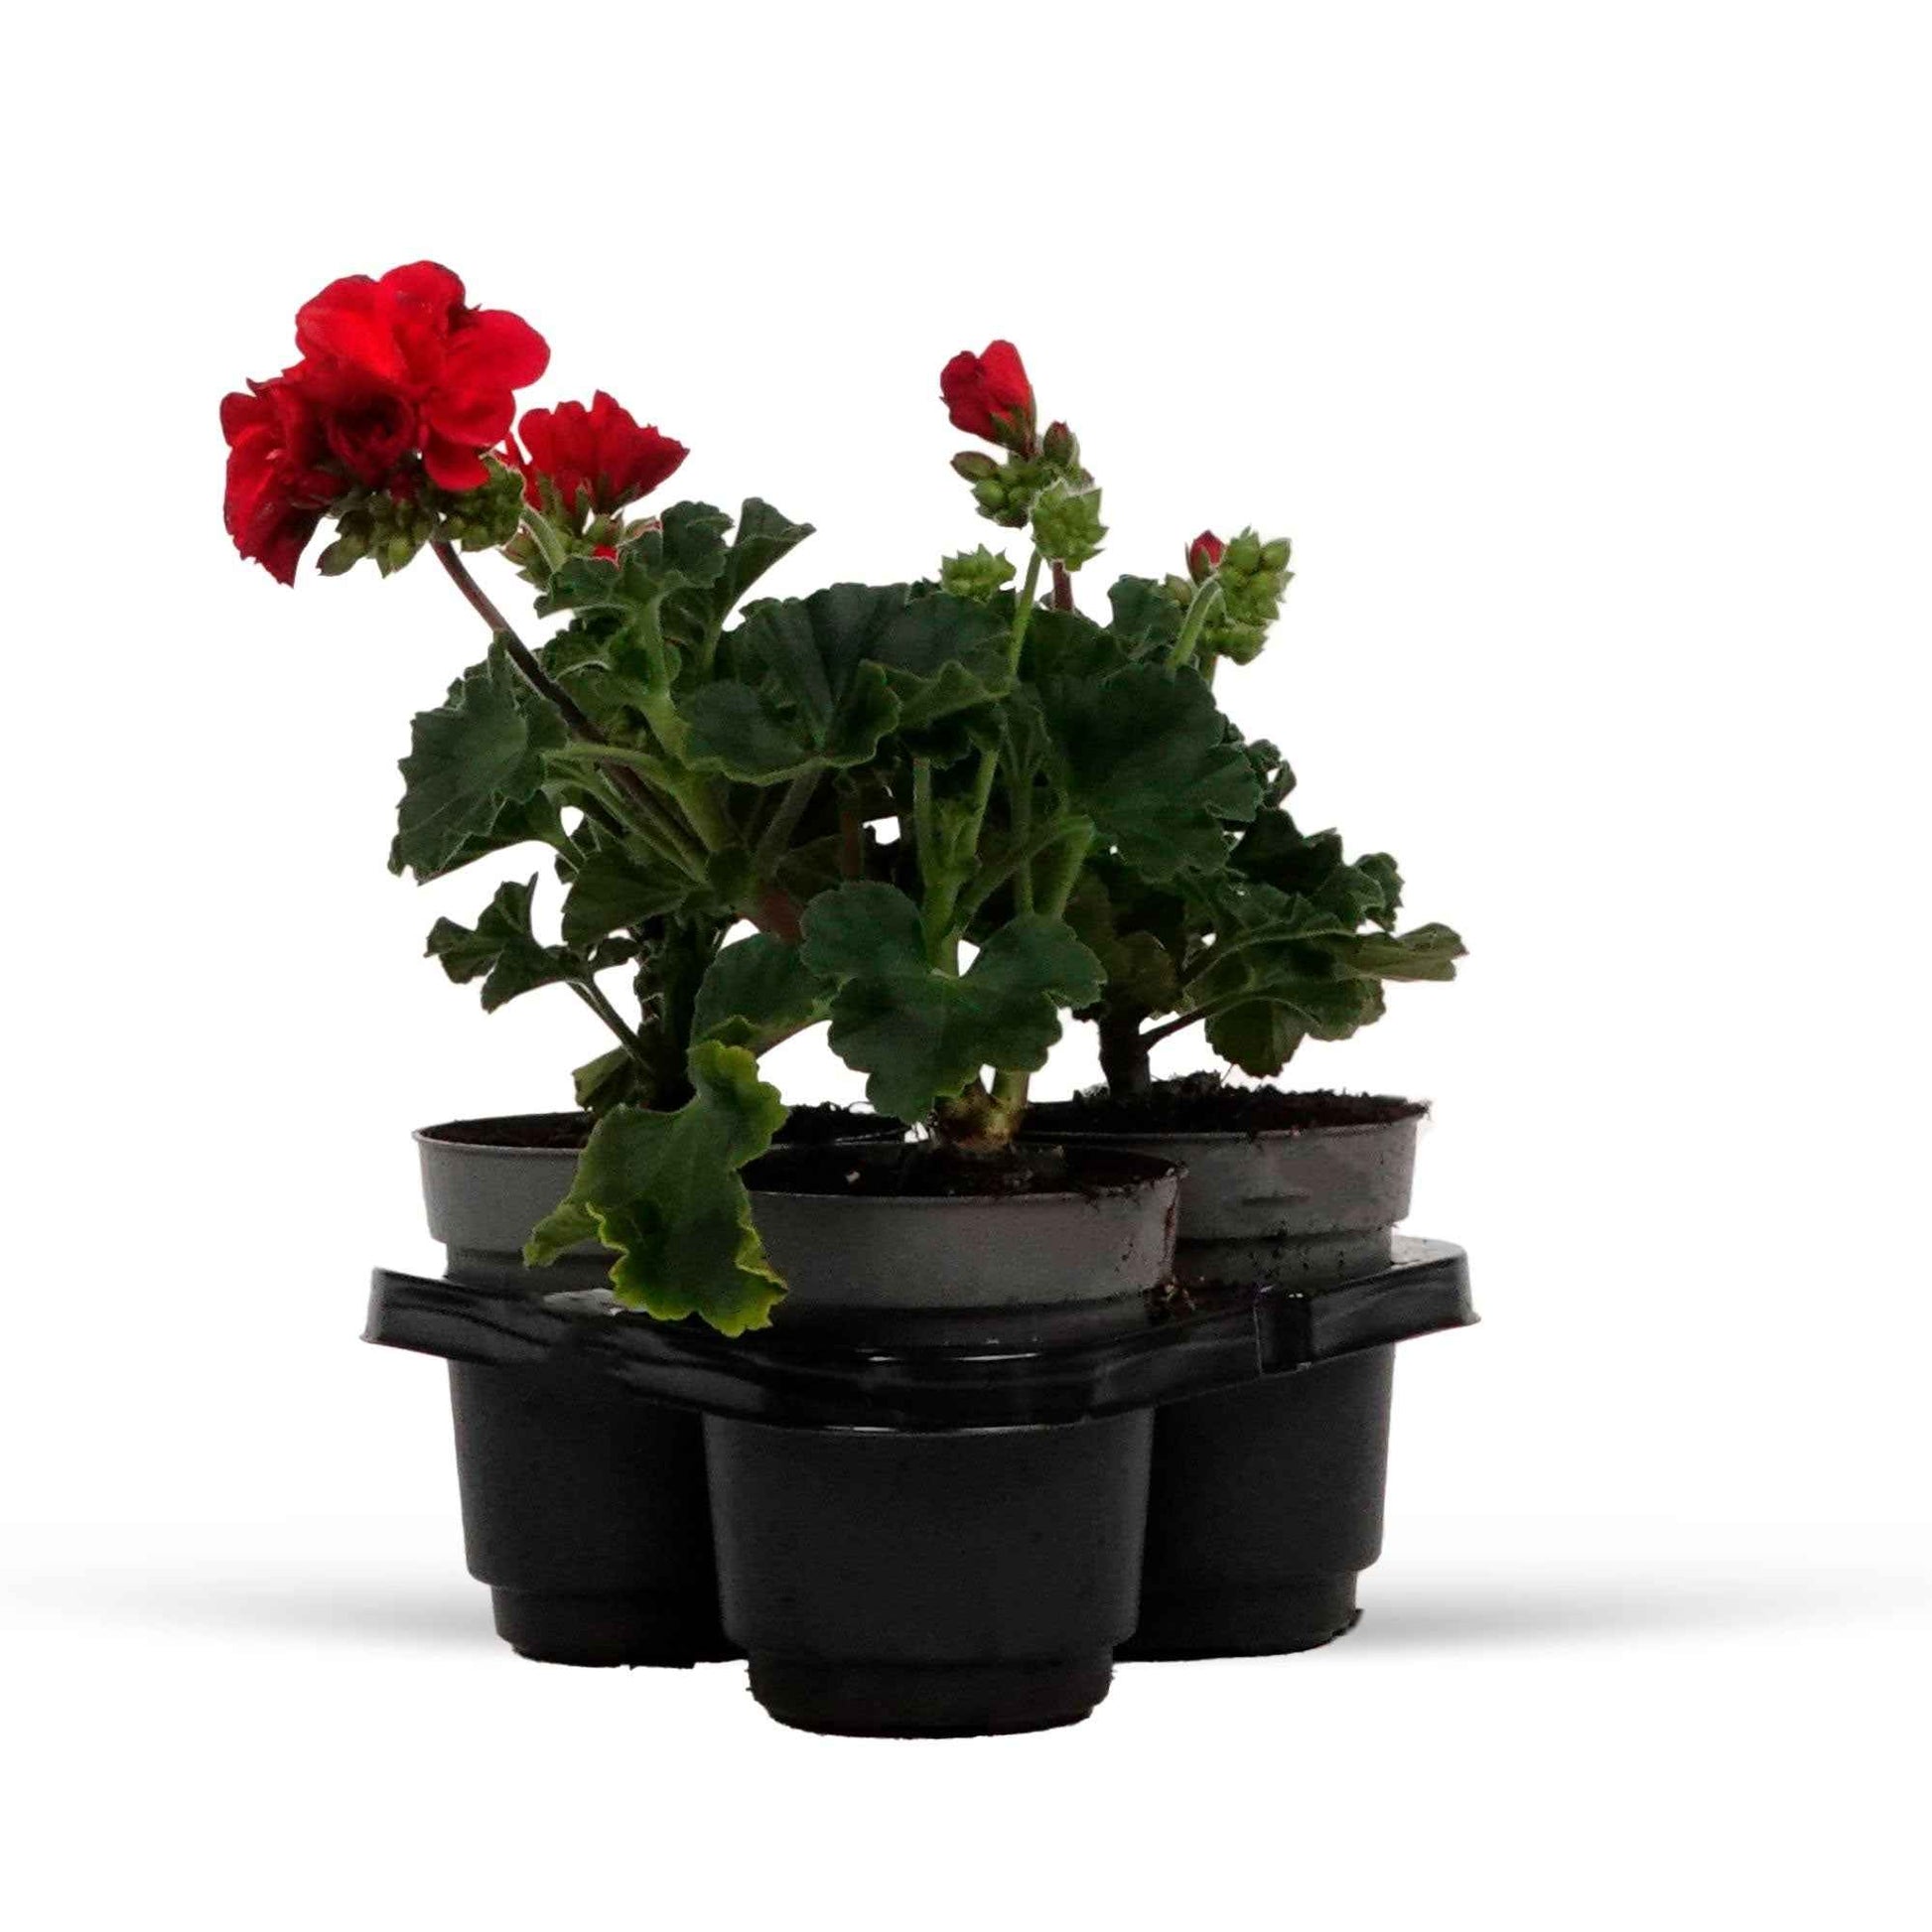 3x Géranium Pelargonium Red rouge - 3x hauteur de livraison 15-25 cm, pot de Diamètre 10,5 cm - Caractéristiques des plantes - undefined